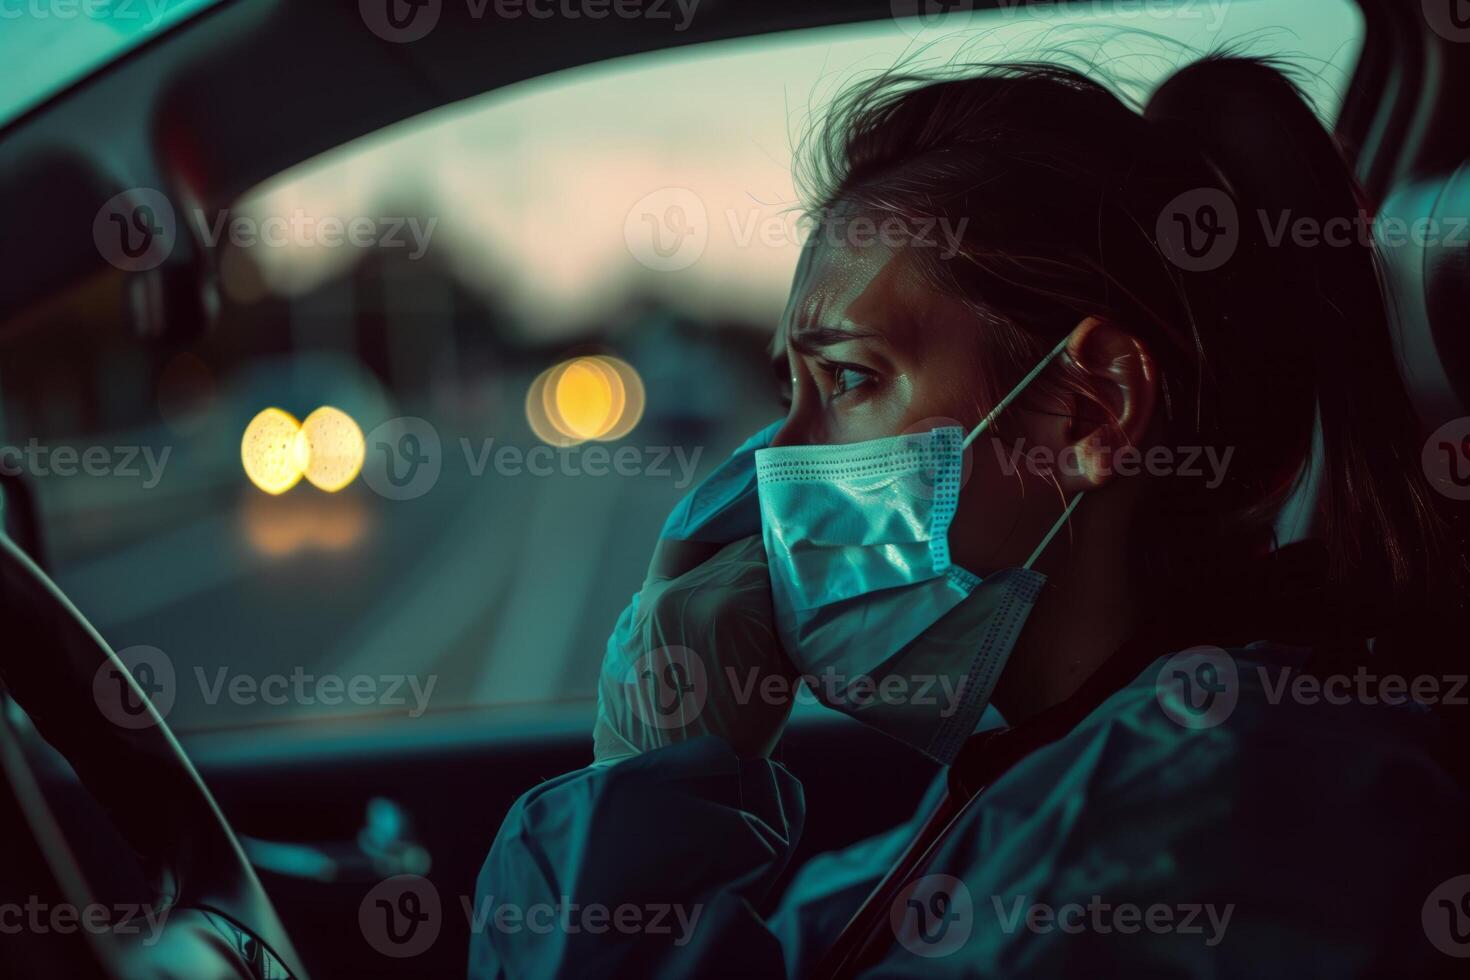 hartverscheurend beeld vastleggen een verpleegster met tranen stromend, gezeten in haar voertuig na een uitdagend verschuiving foto